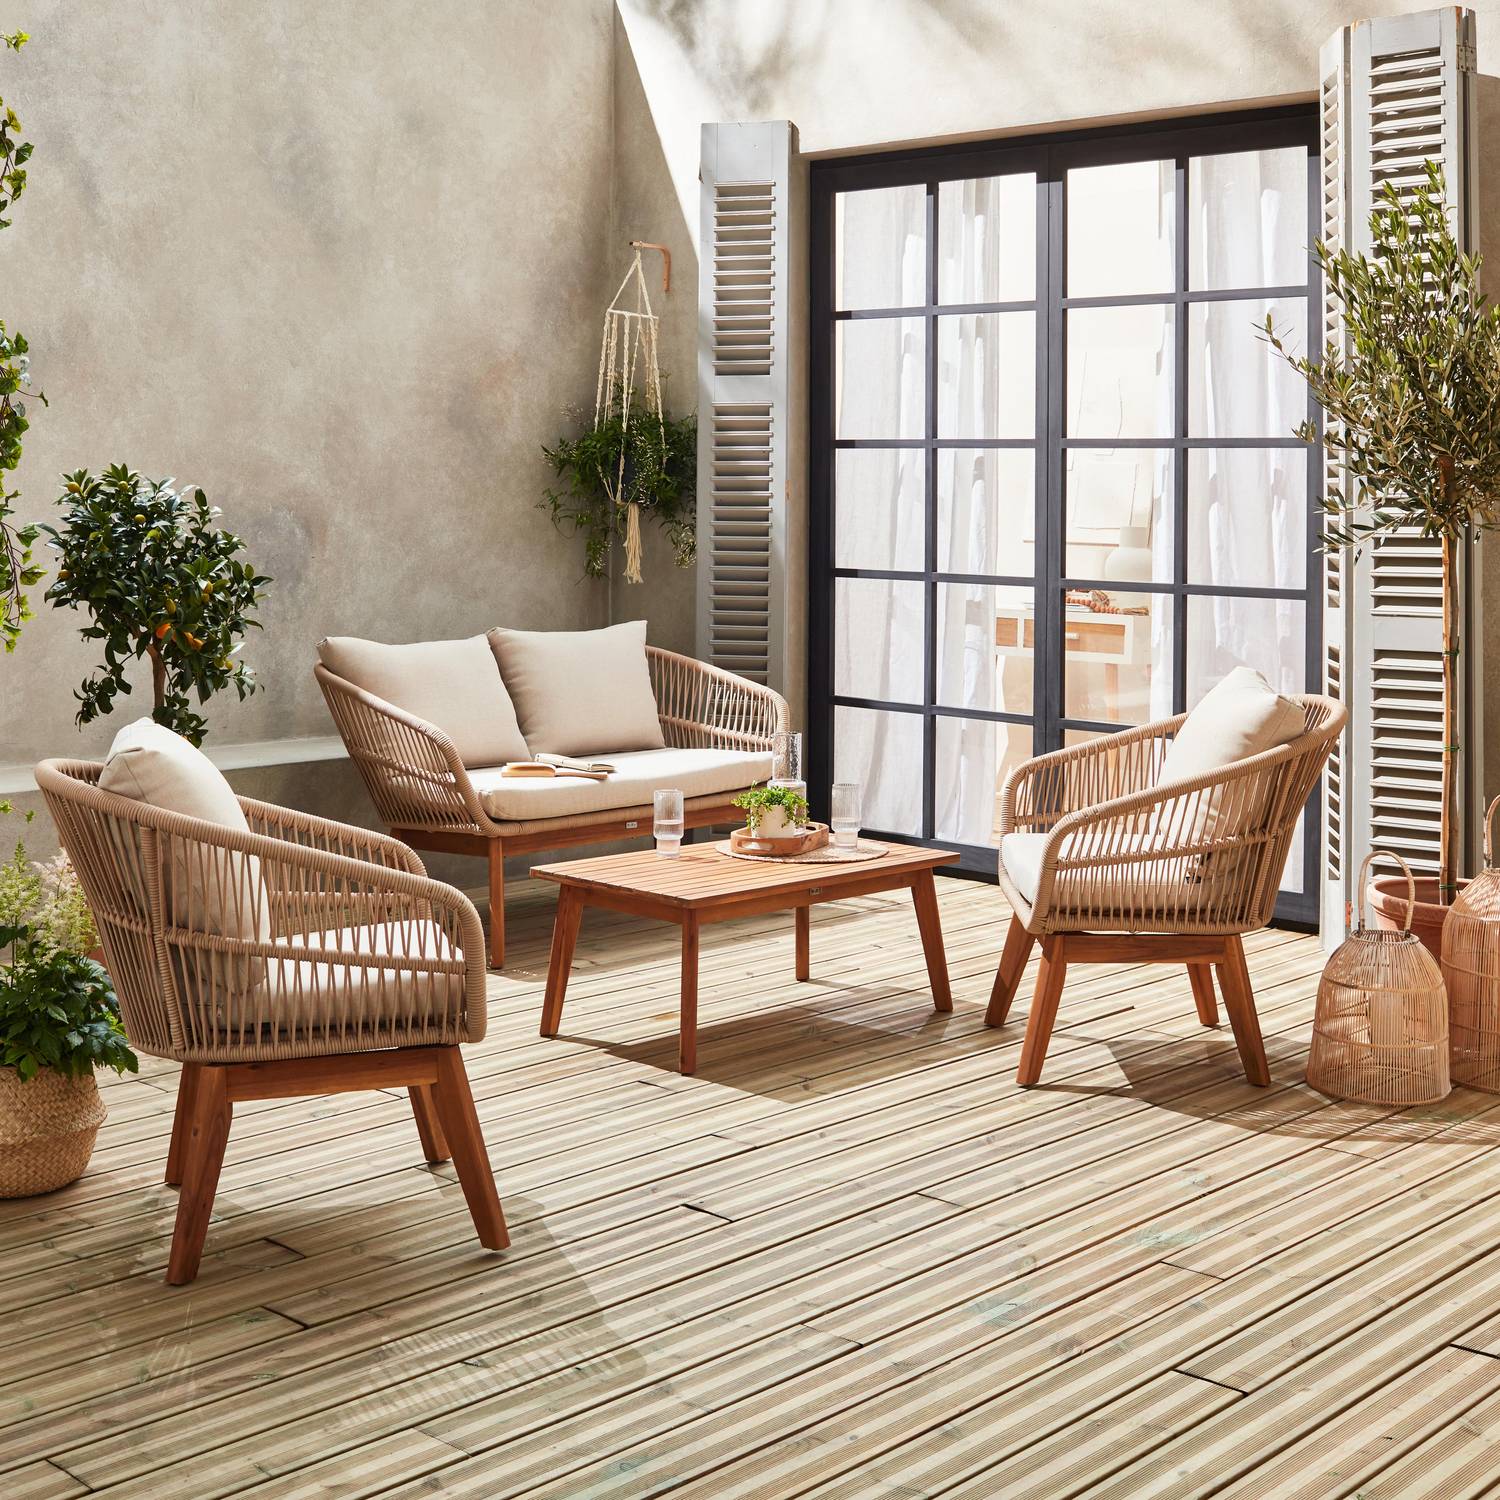 Set di mobili da giardino 4 posti - ROSARIO - corda intrecciata, legno e alluminio, cuscini beige / beige Photo2